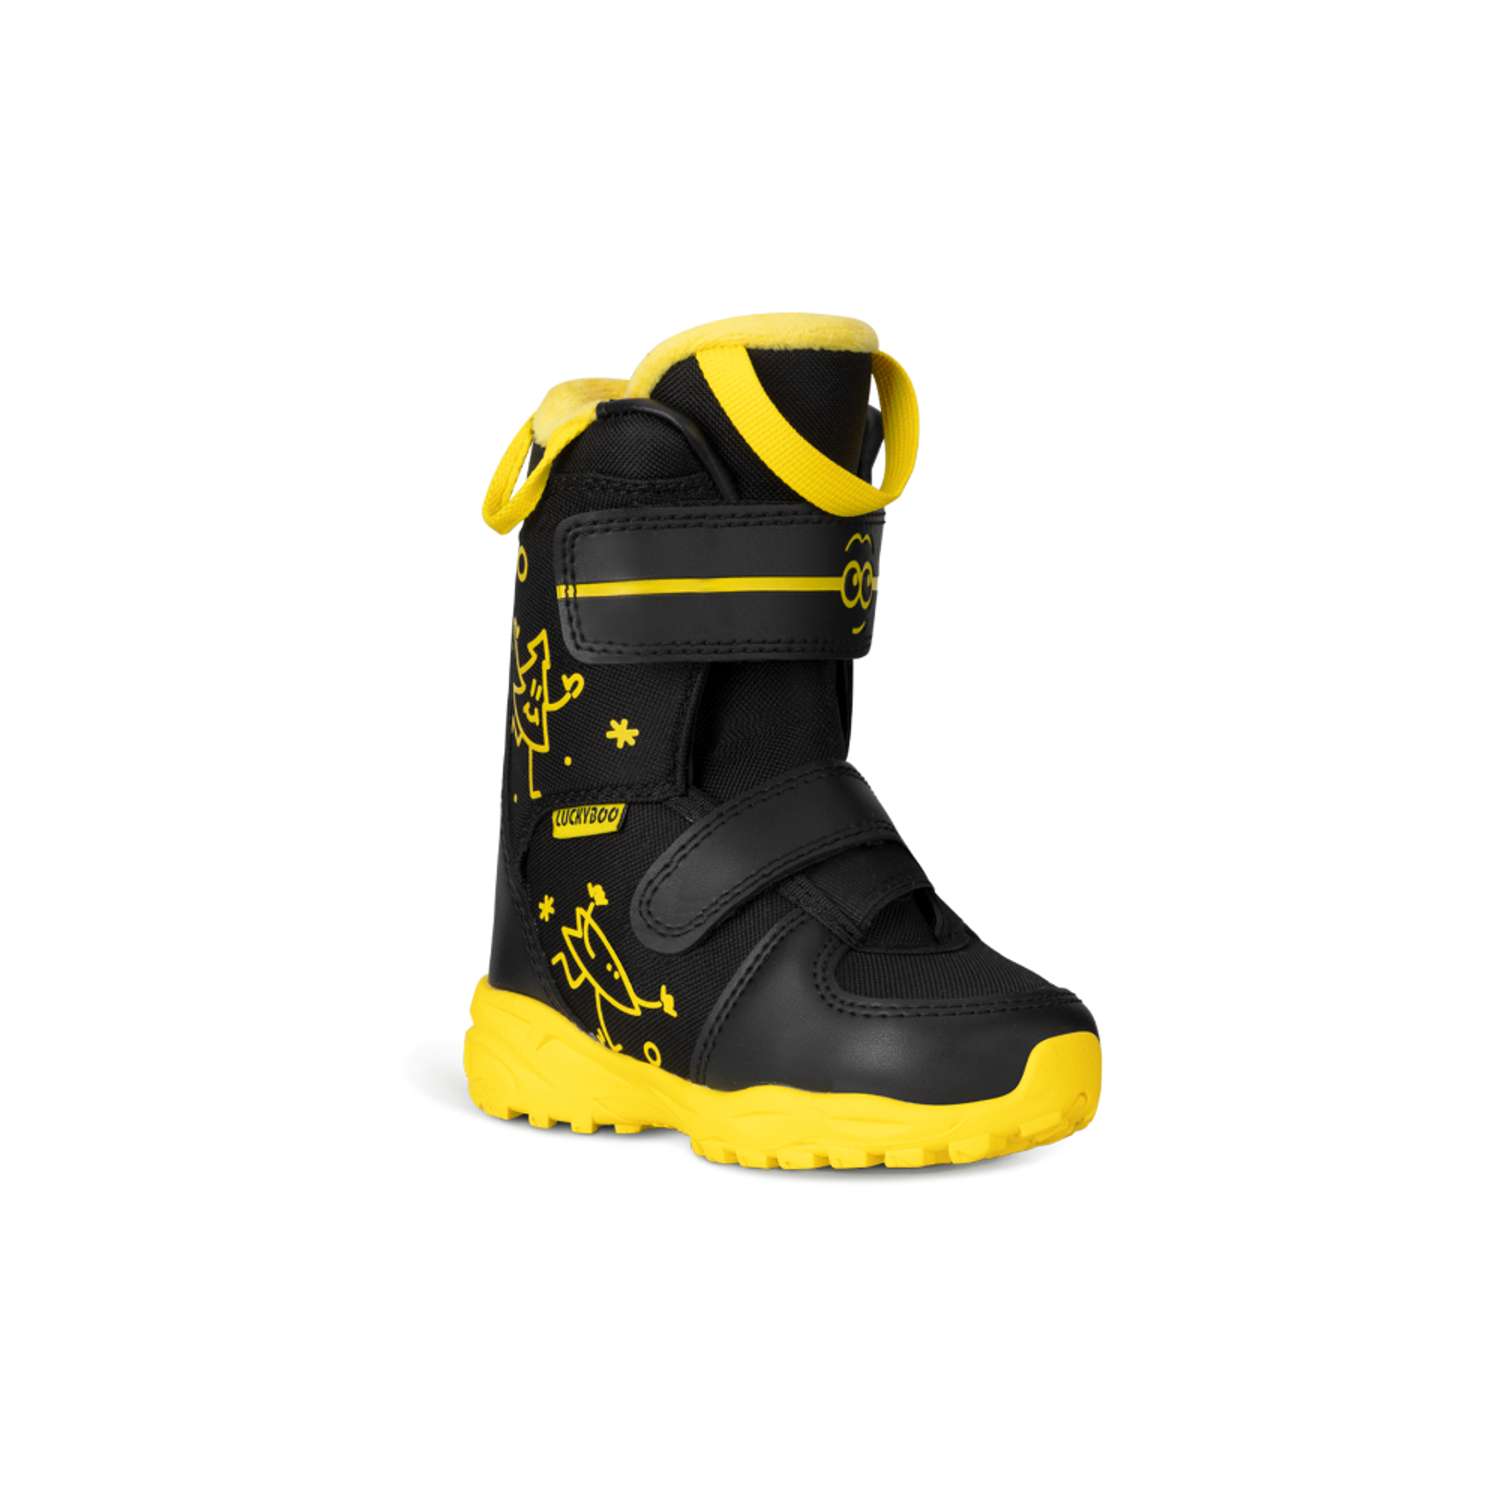 Ботинки для сноуборда Velcro Luckyboo 18cm - фото 1